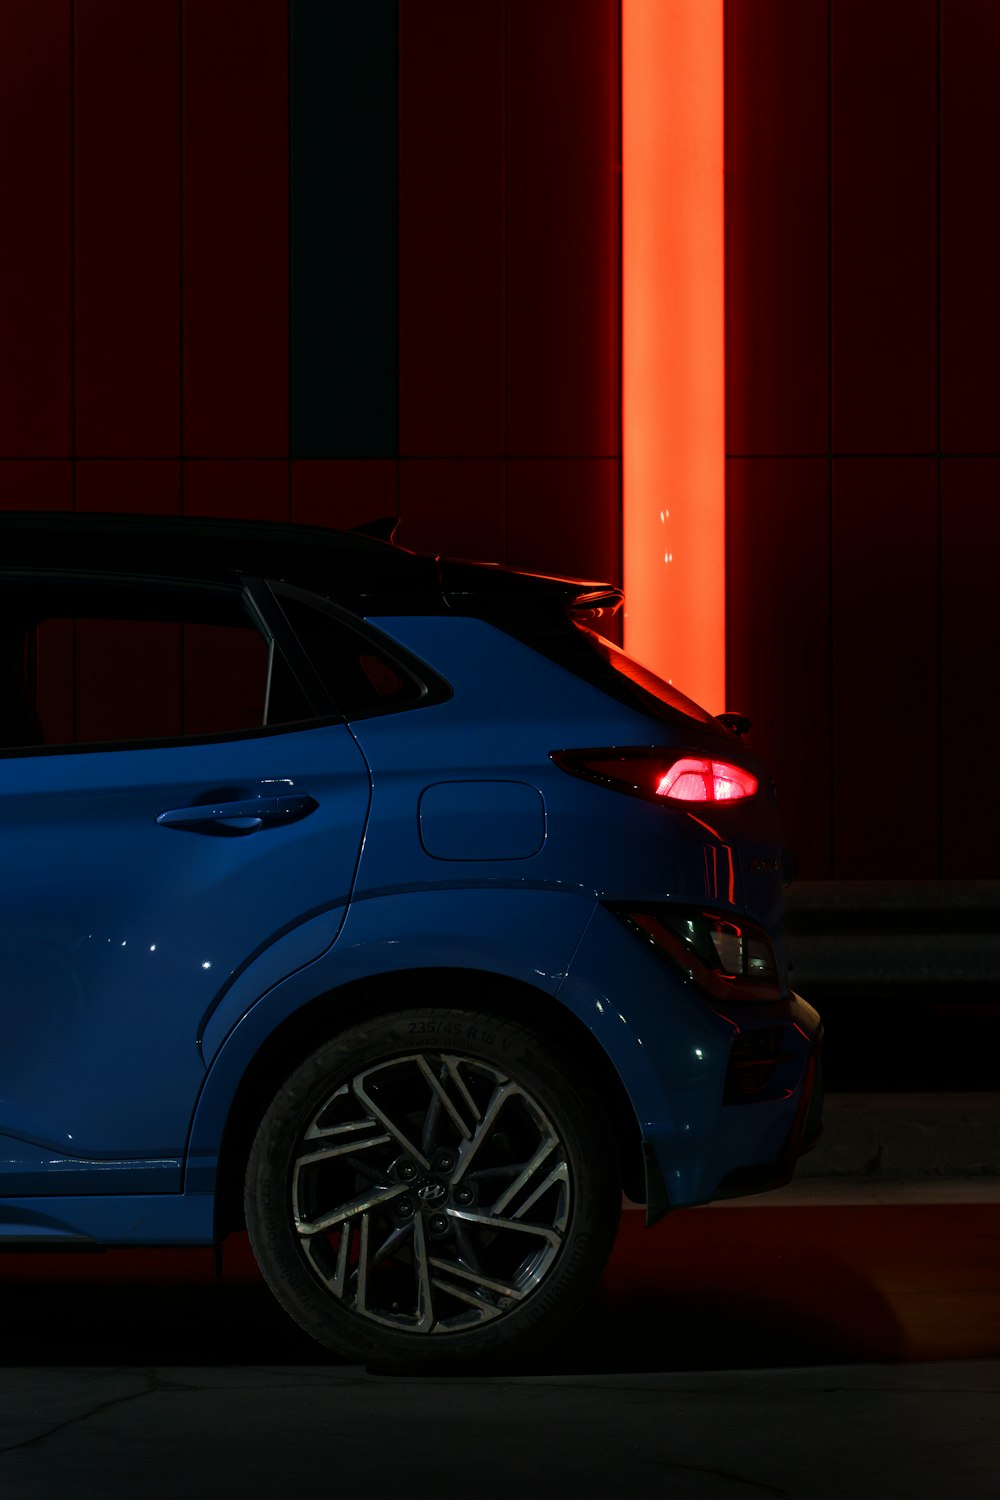 Un coche azul aparcado frente a una pared roja